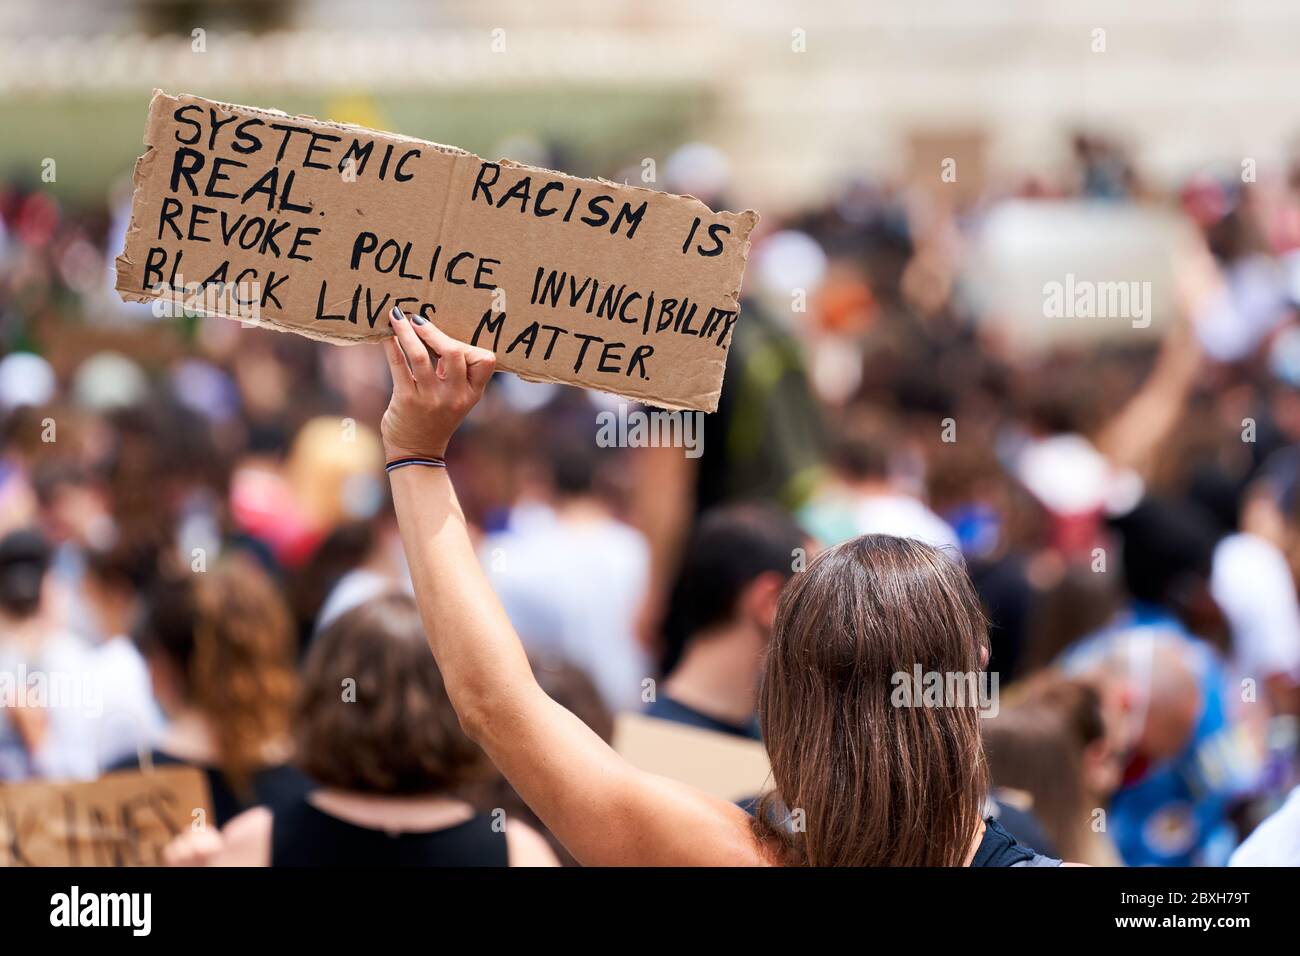 Les vies noires comptent, protestent contre le racisme pour George Floyd. Une jeune femme qui porte un signe: 'Le racisme systémique est réel. Révoquer l'invincibilité de la police » Banque D'Images